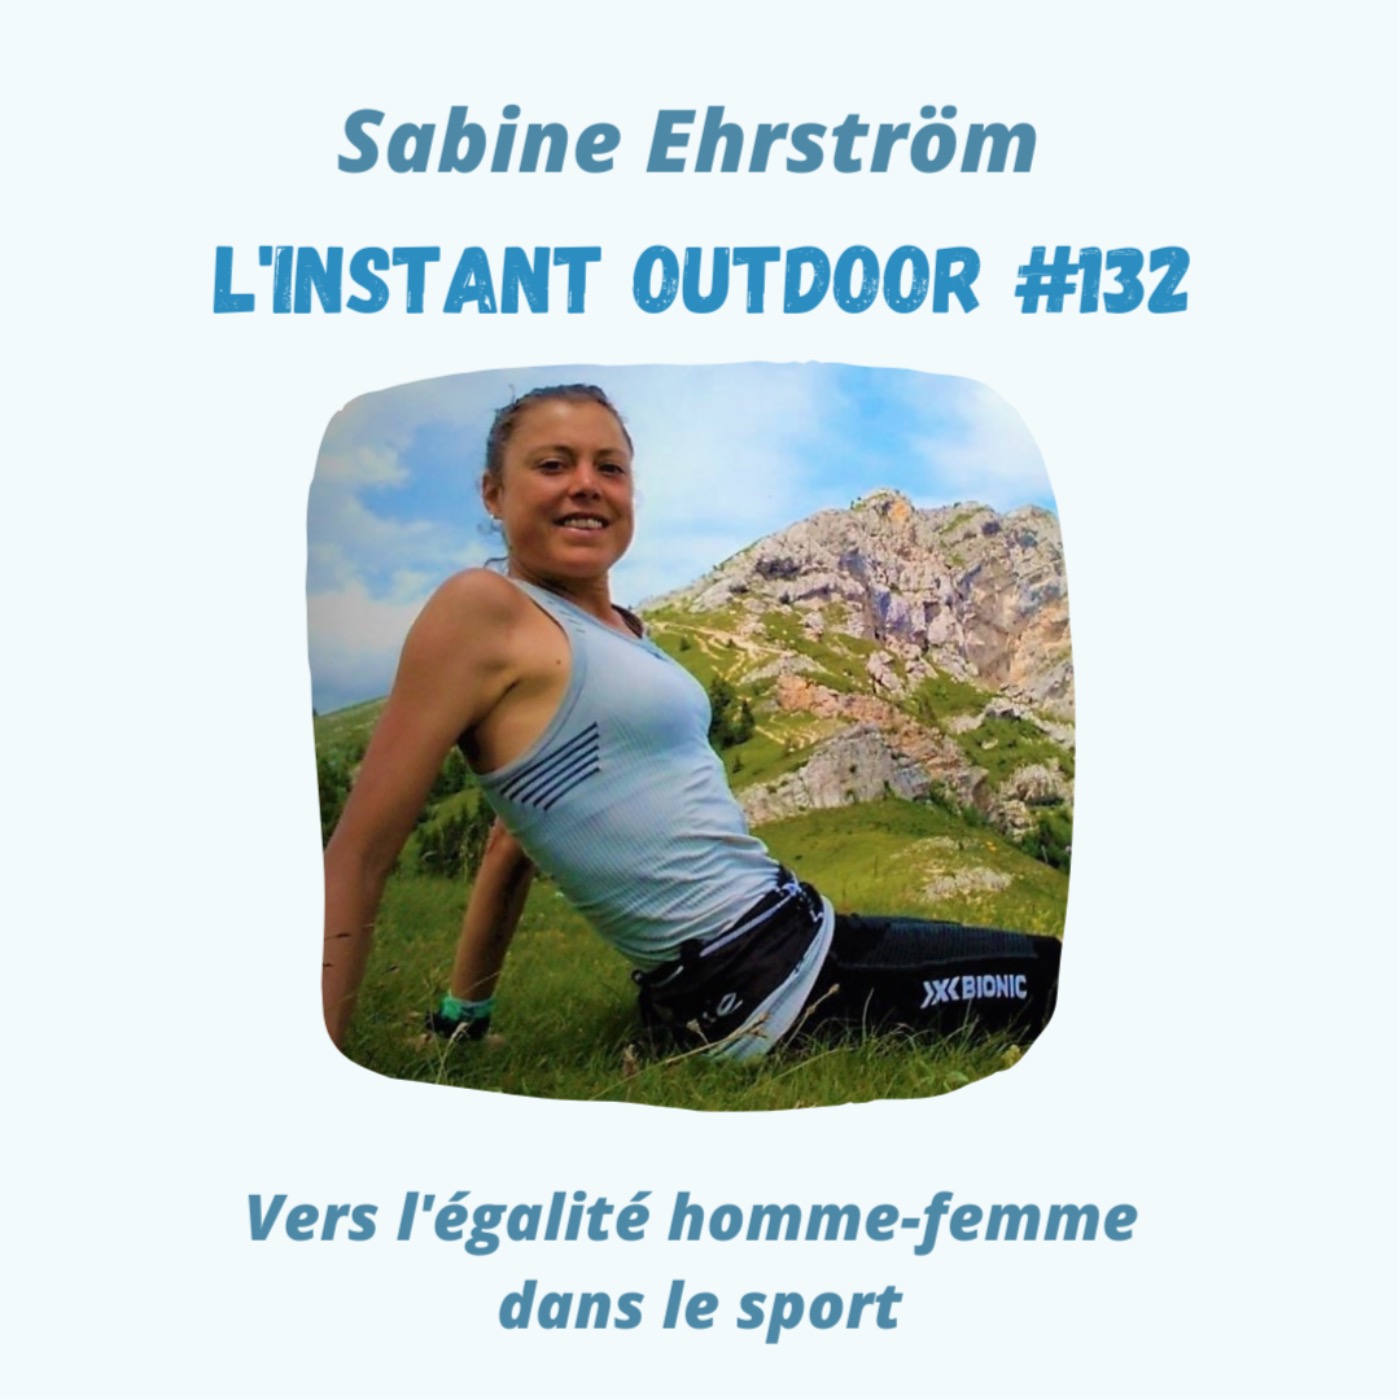 Sabine Ehrström : Vers l'égalité homme-femme dans le sport